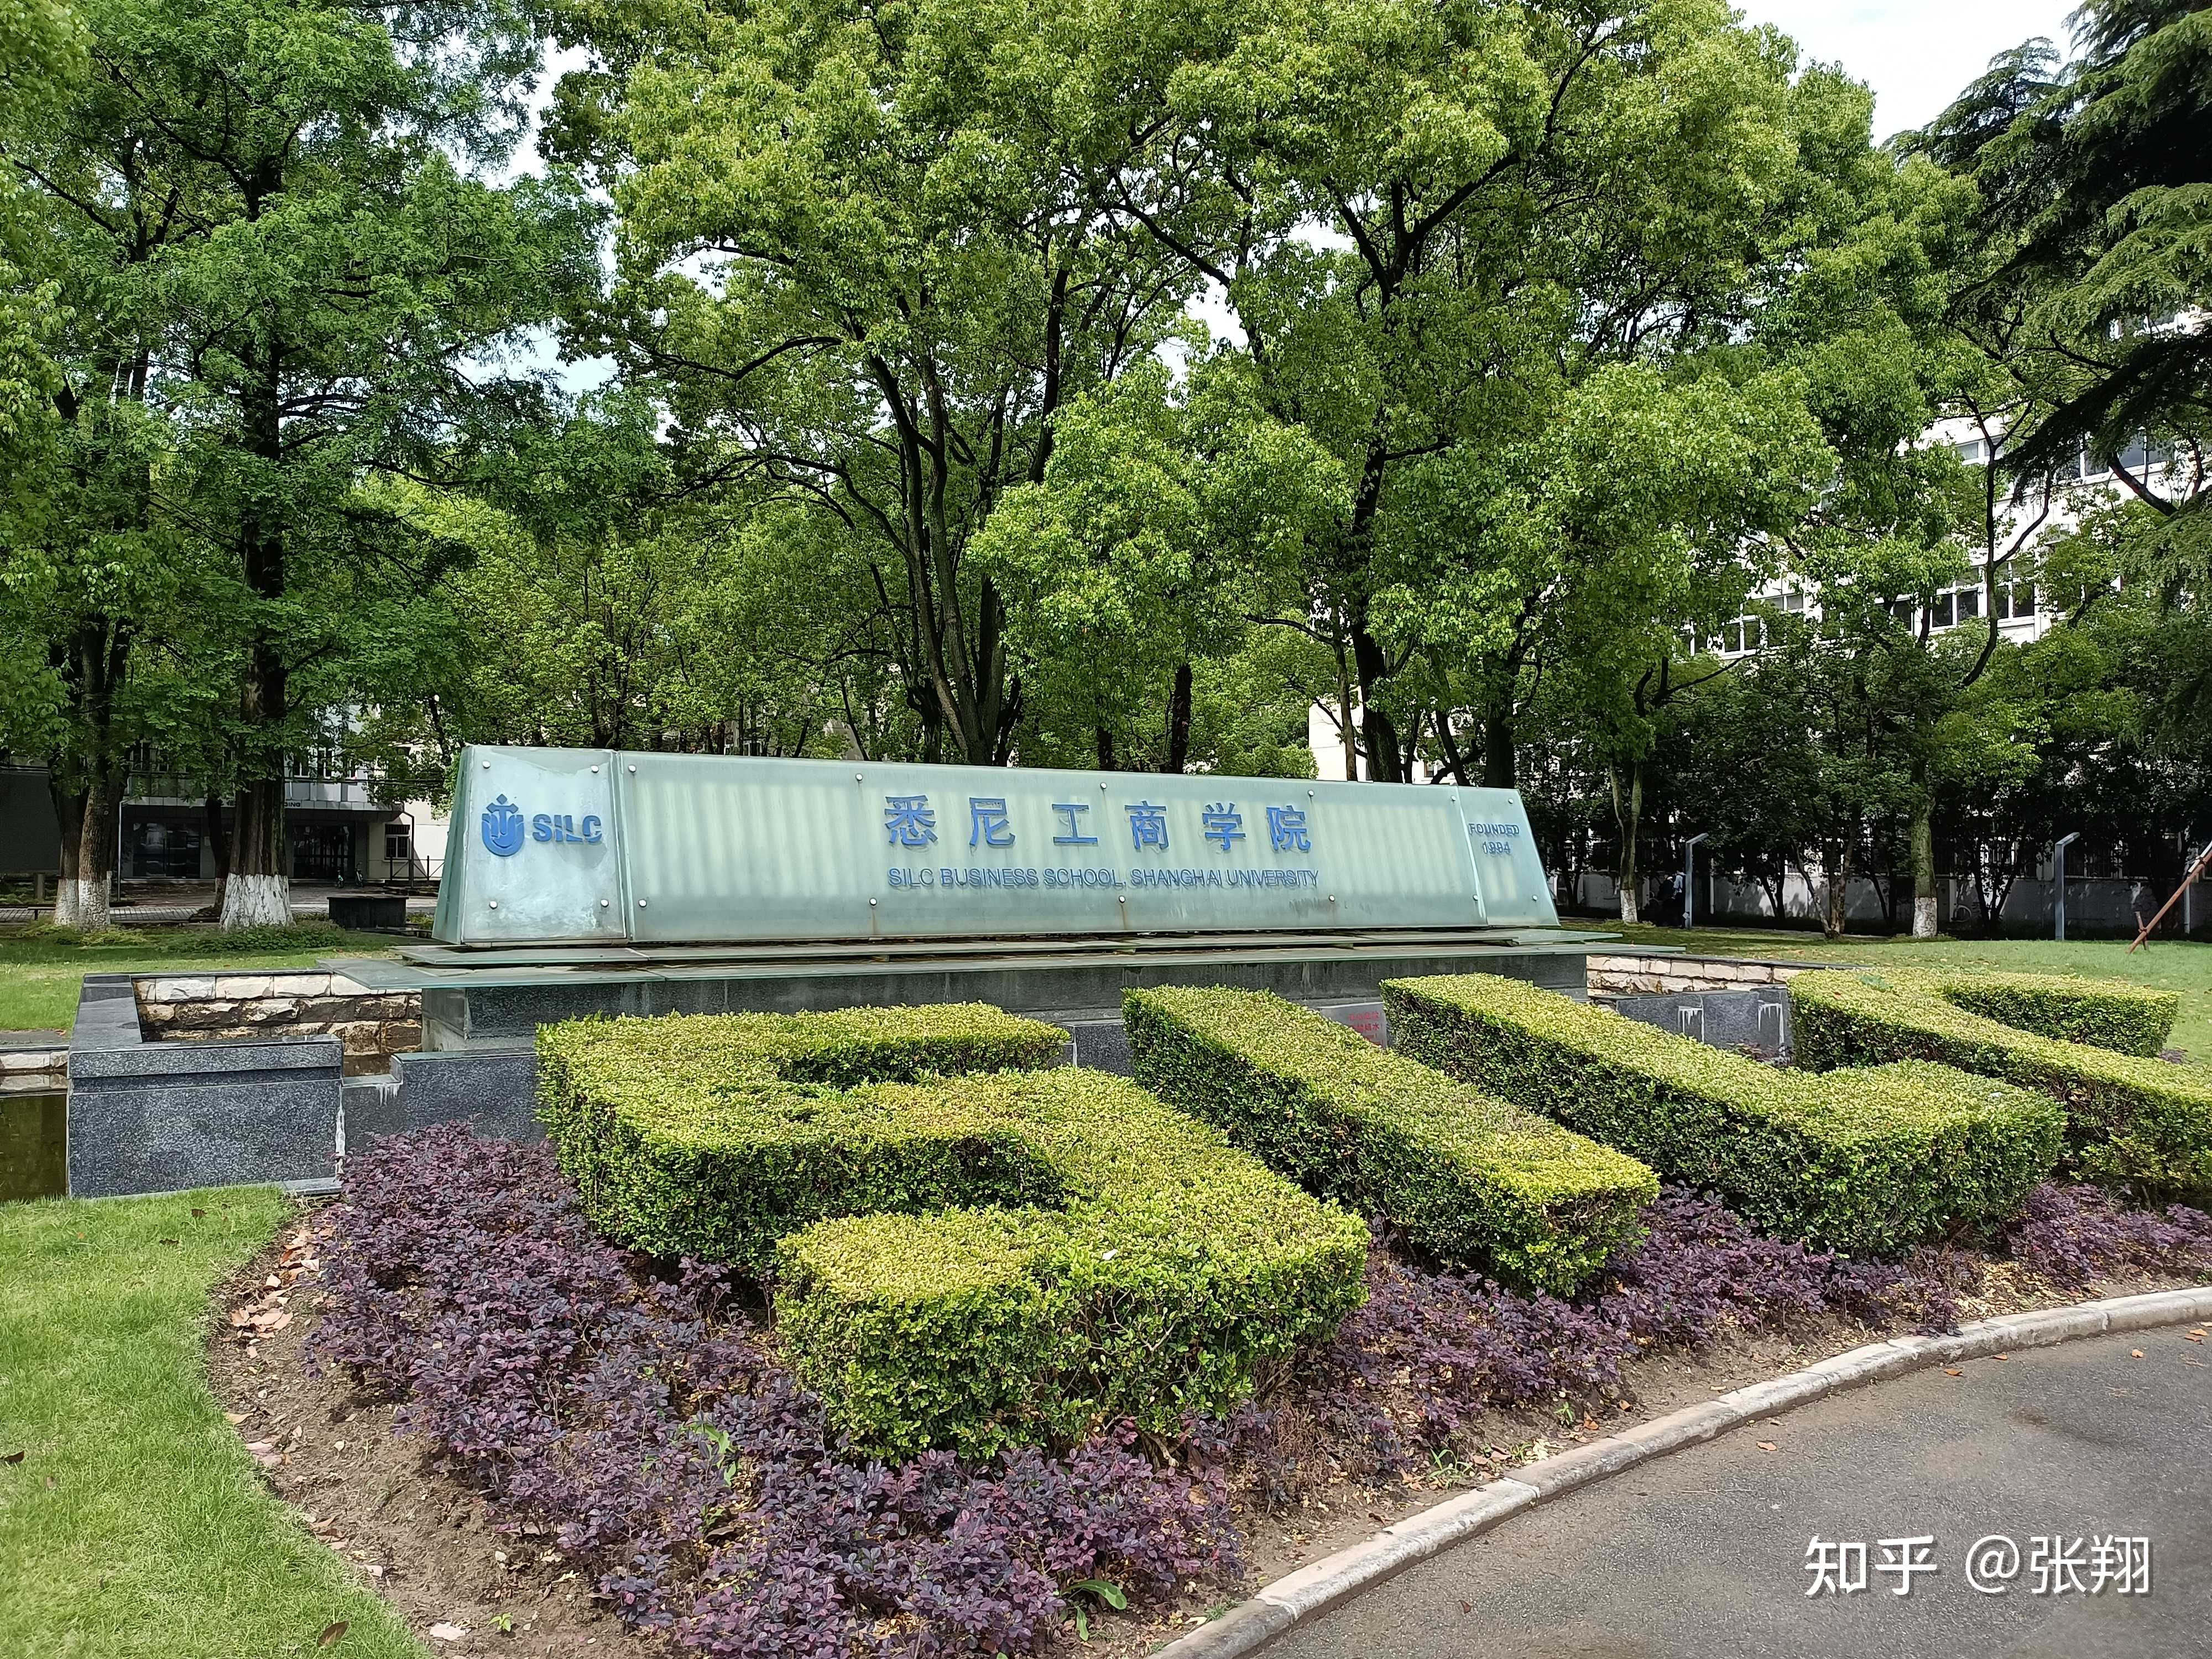 张翔 的想法: 上海大学悉尼工商学院大一新生组建的壹日… - 知乎